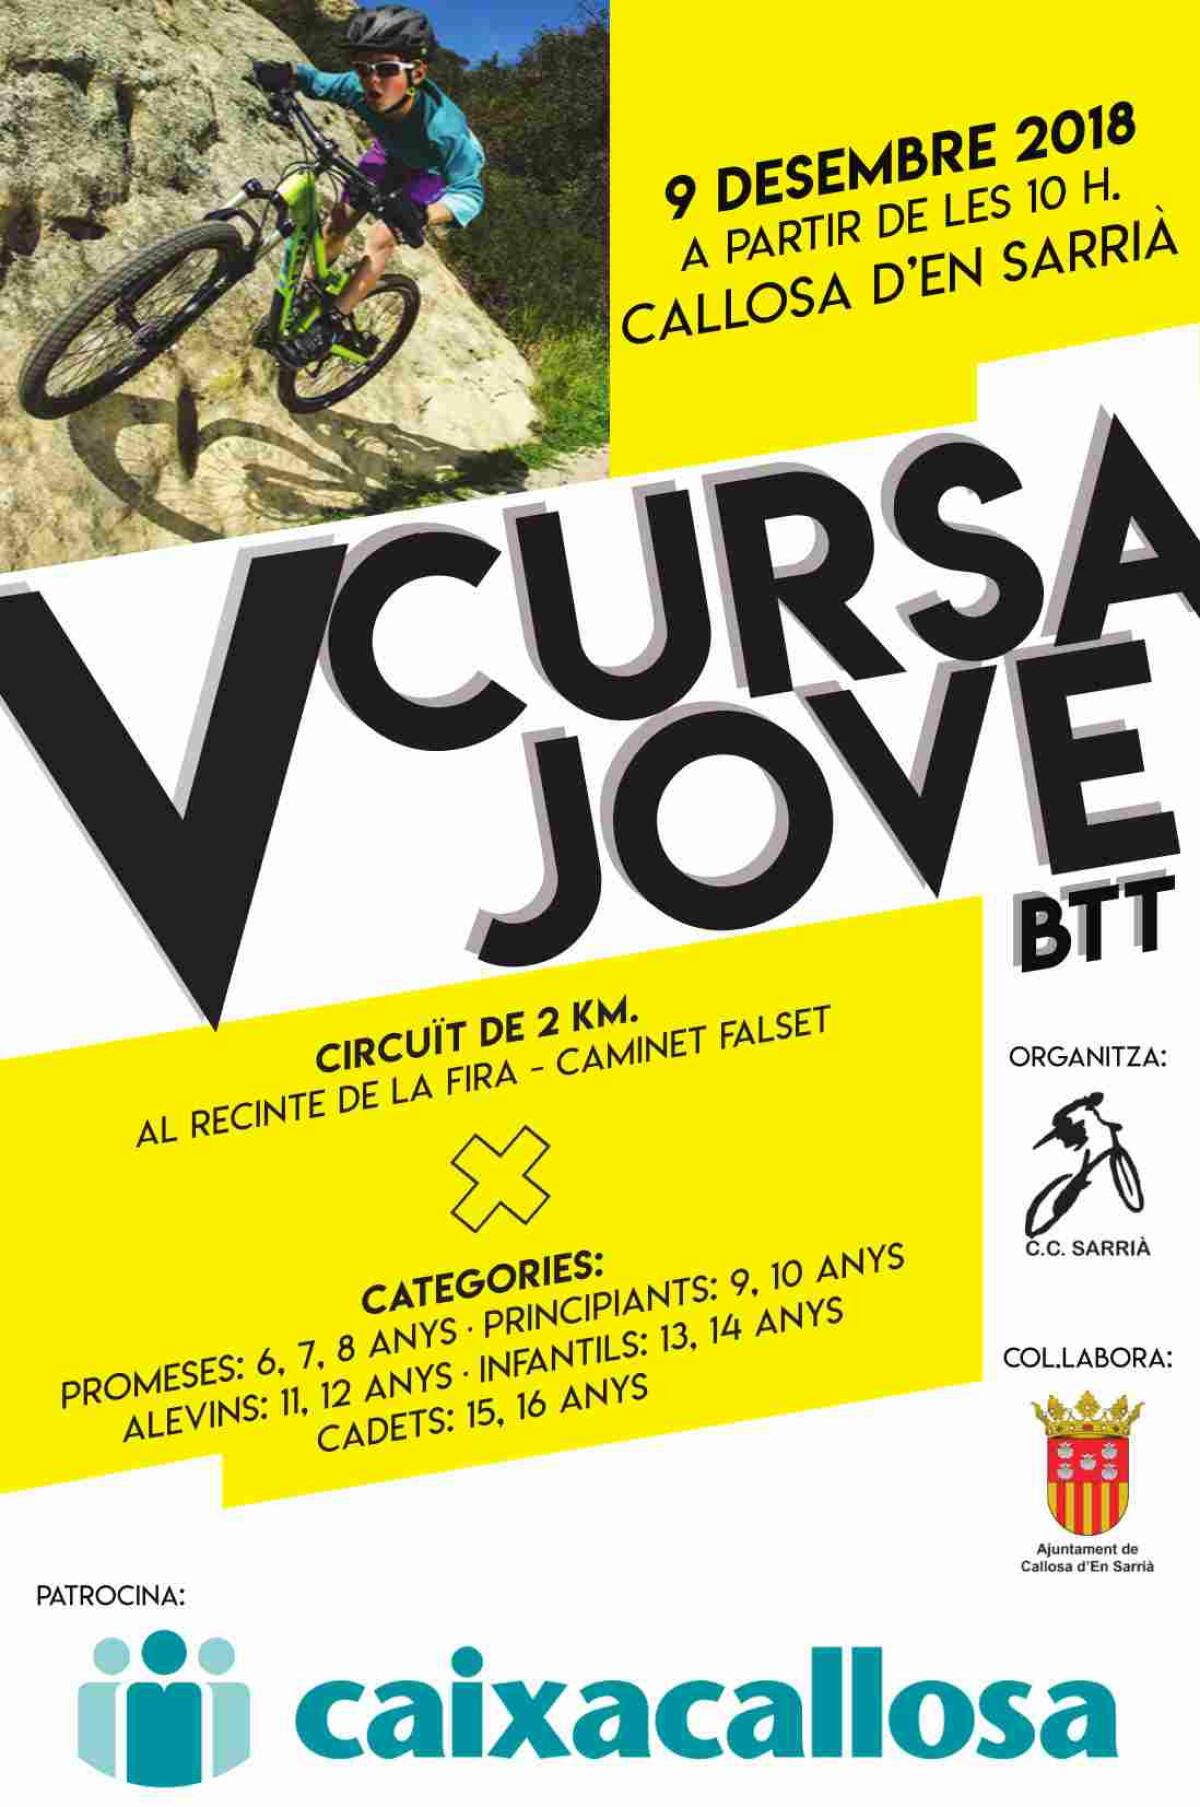  El Club Ciclista Sarrià organiza el próximo 9 de diciembre la V Cursa Jove BTT